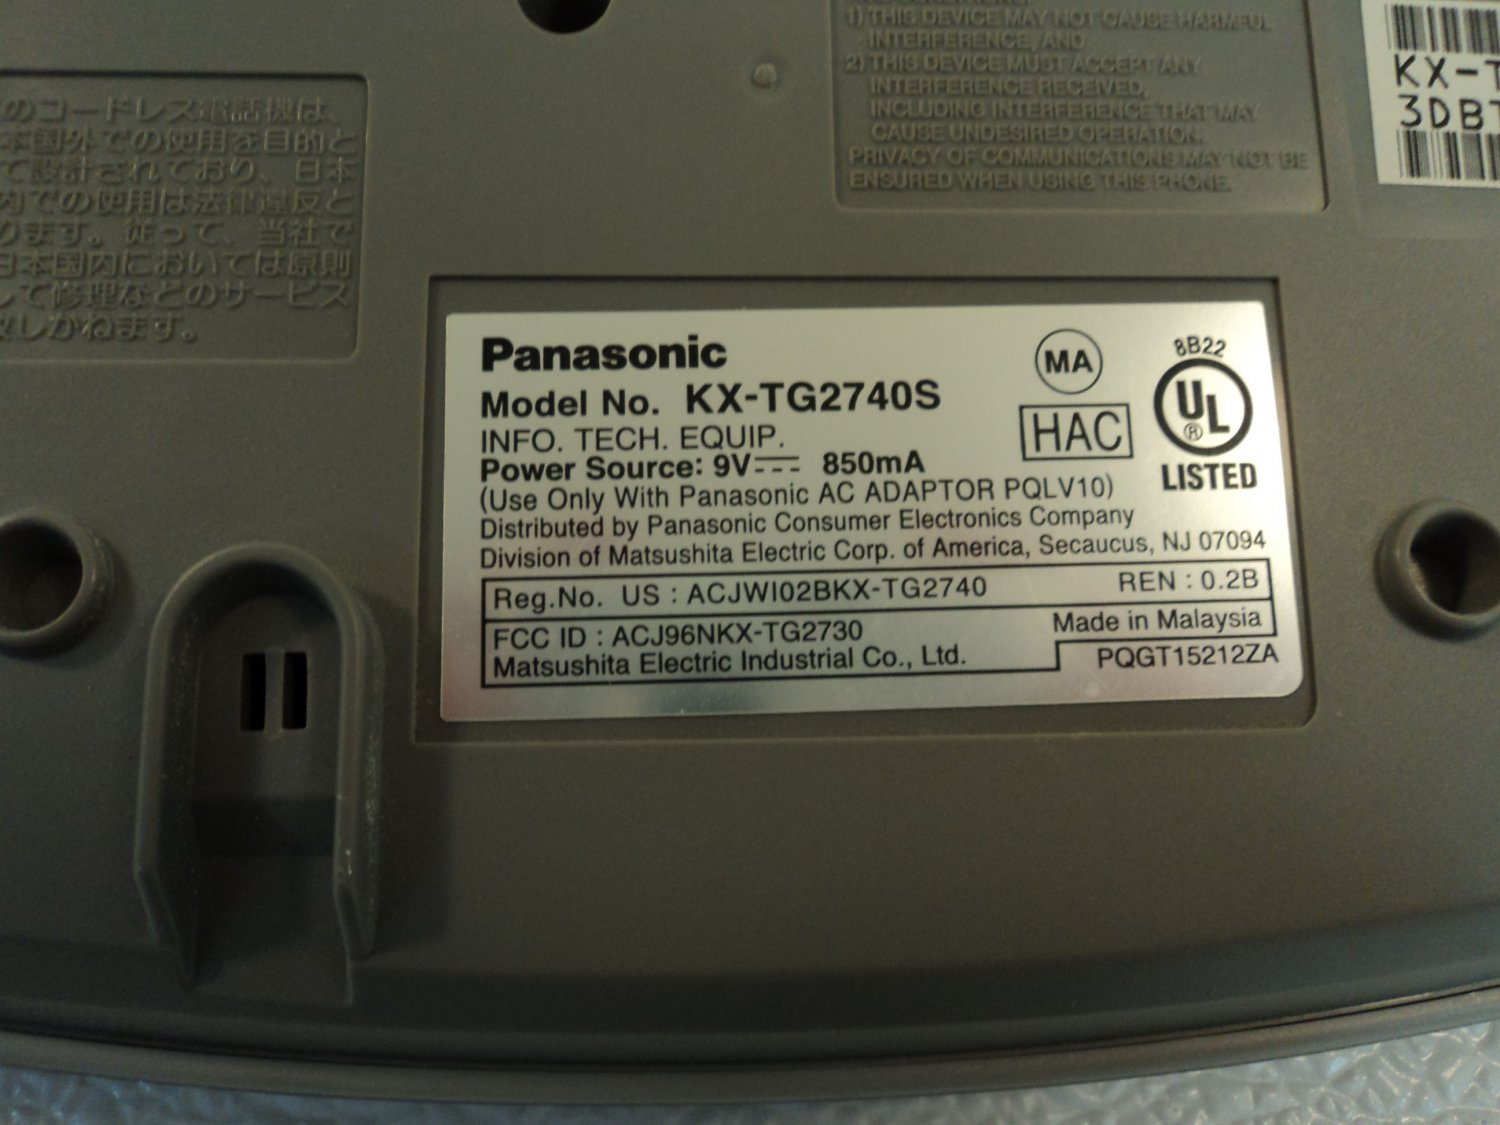 Panasonic Telephone Base Station Cordless Cradle Silver 2